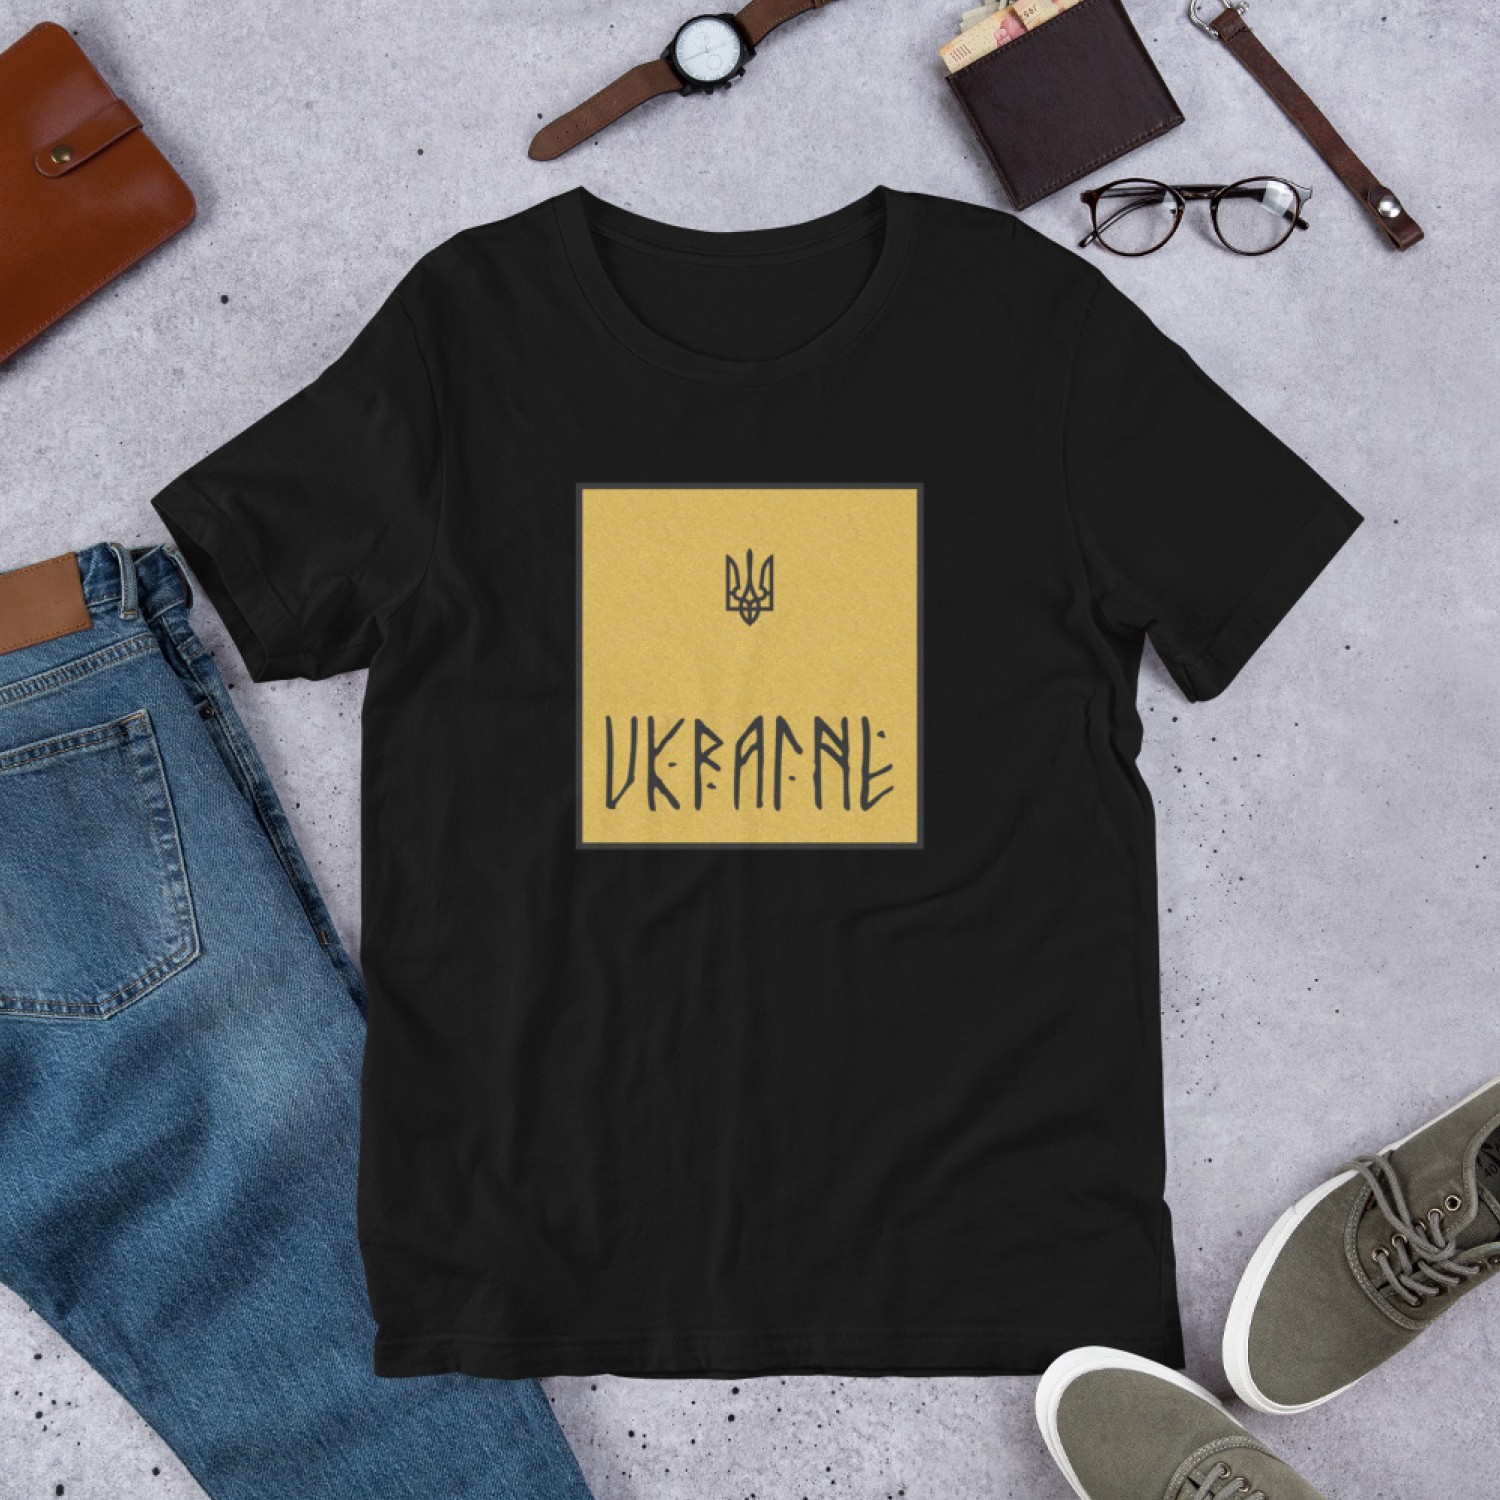 T-shirt "Ukraine"